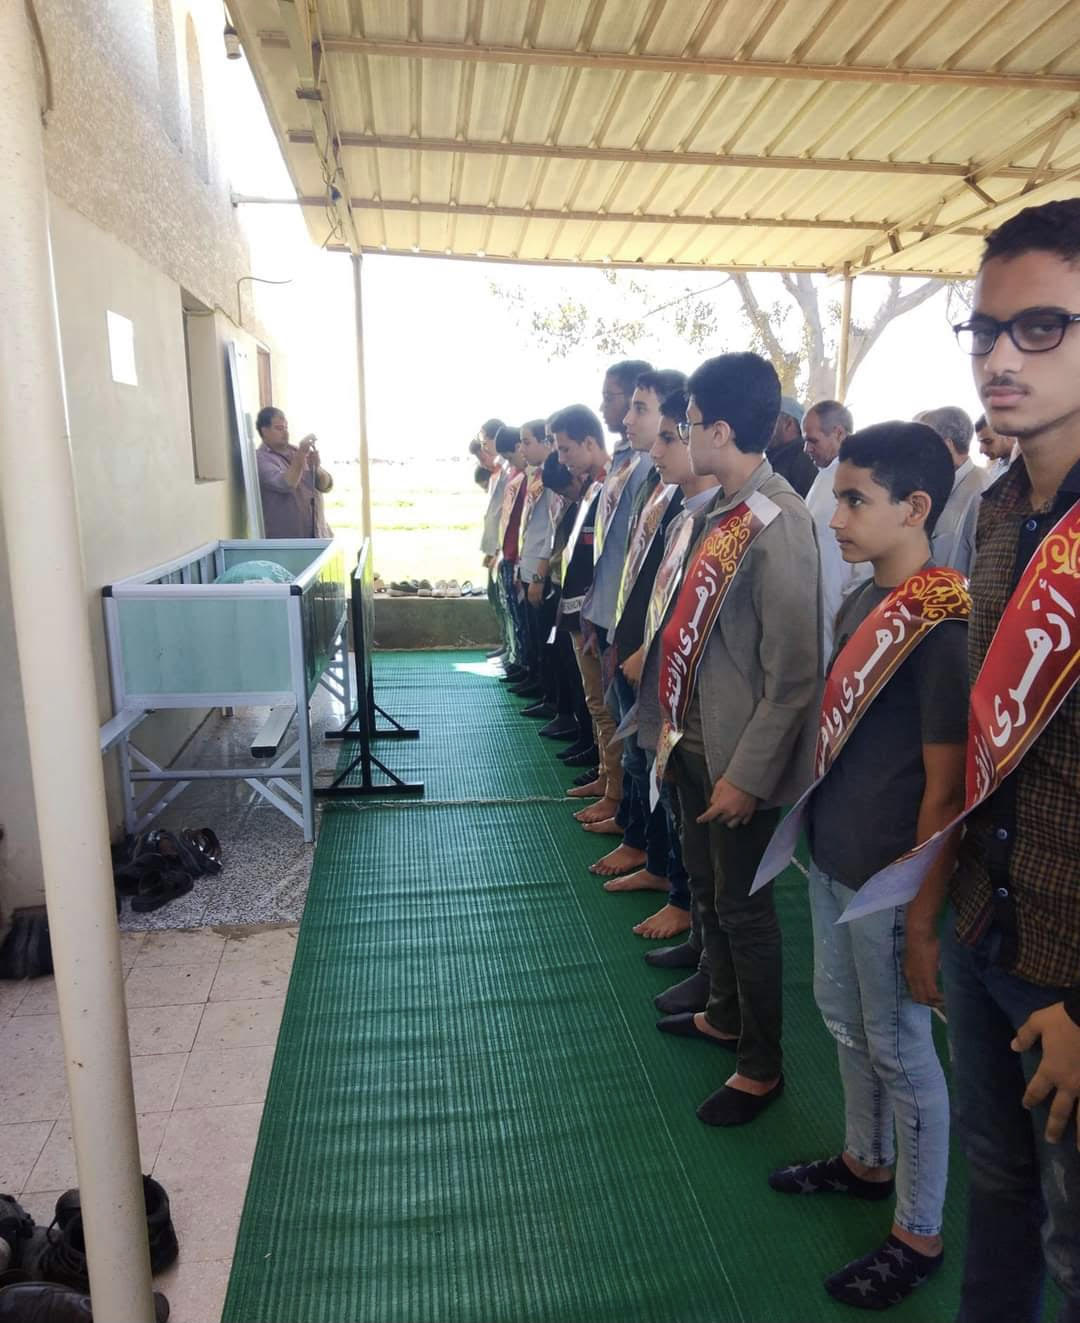 تلاميذ معهد بني عبيد الإعدادي الثانوي الأزهري يشيعون جنازة معلمهم بممر شرفي